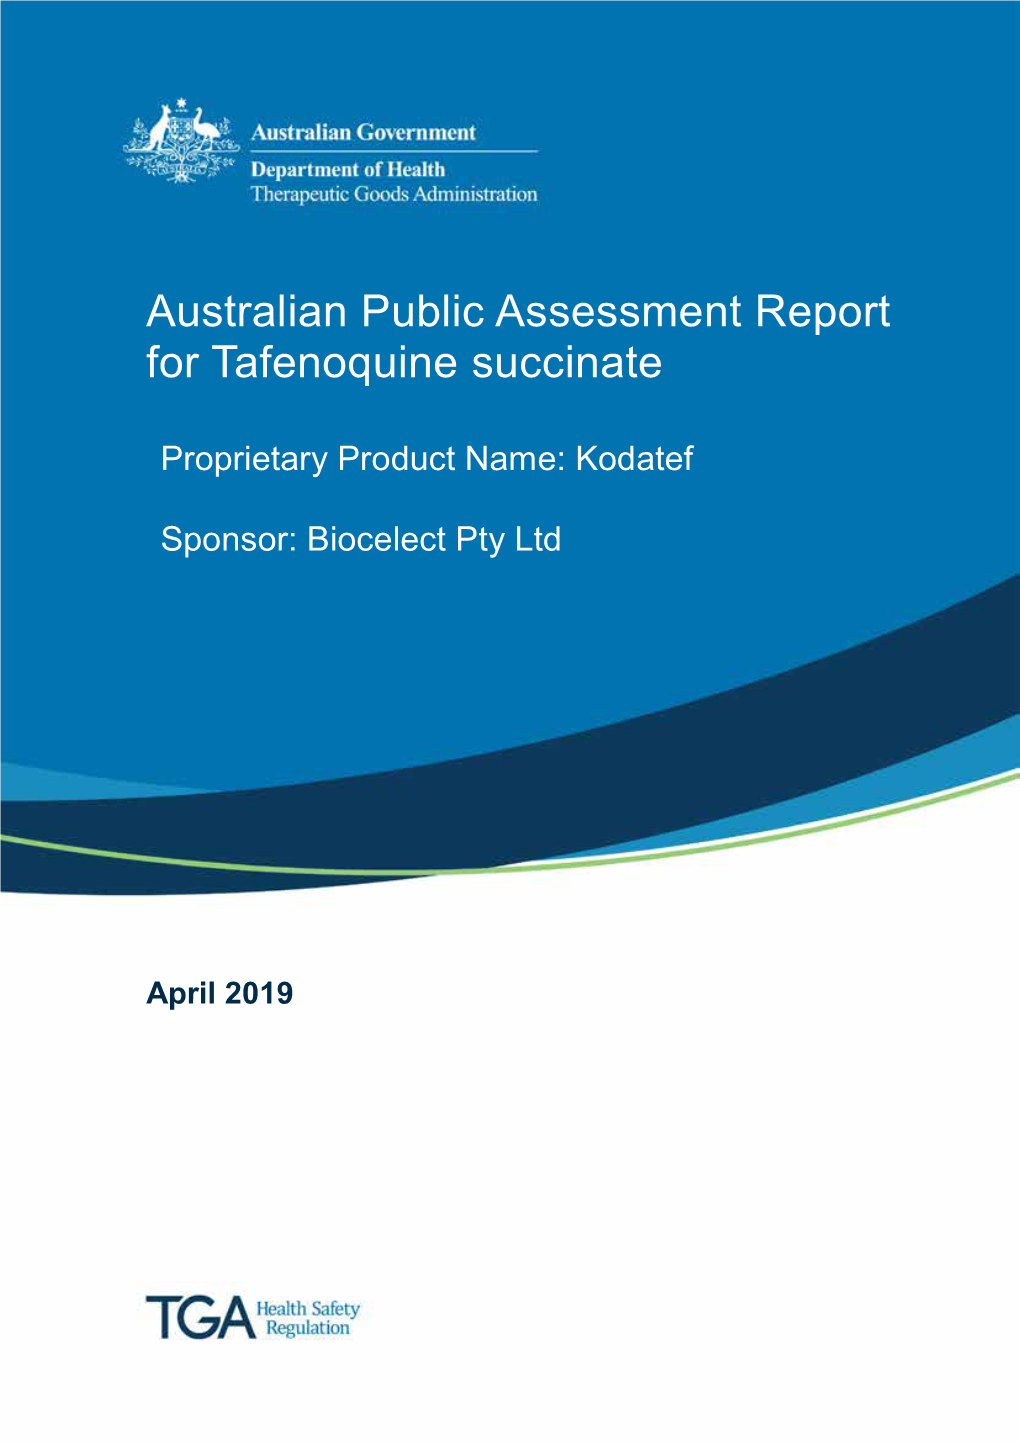 Australian Public Assessment Report for Tafenoquine Succinate